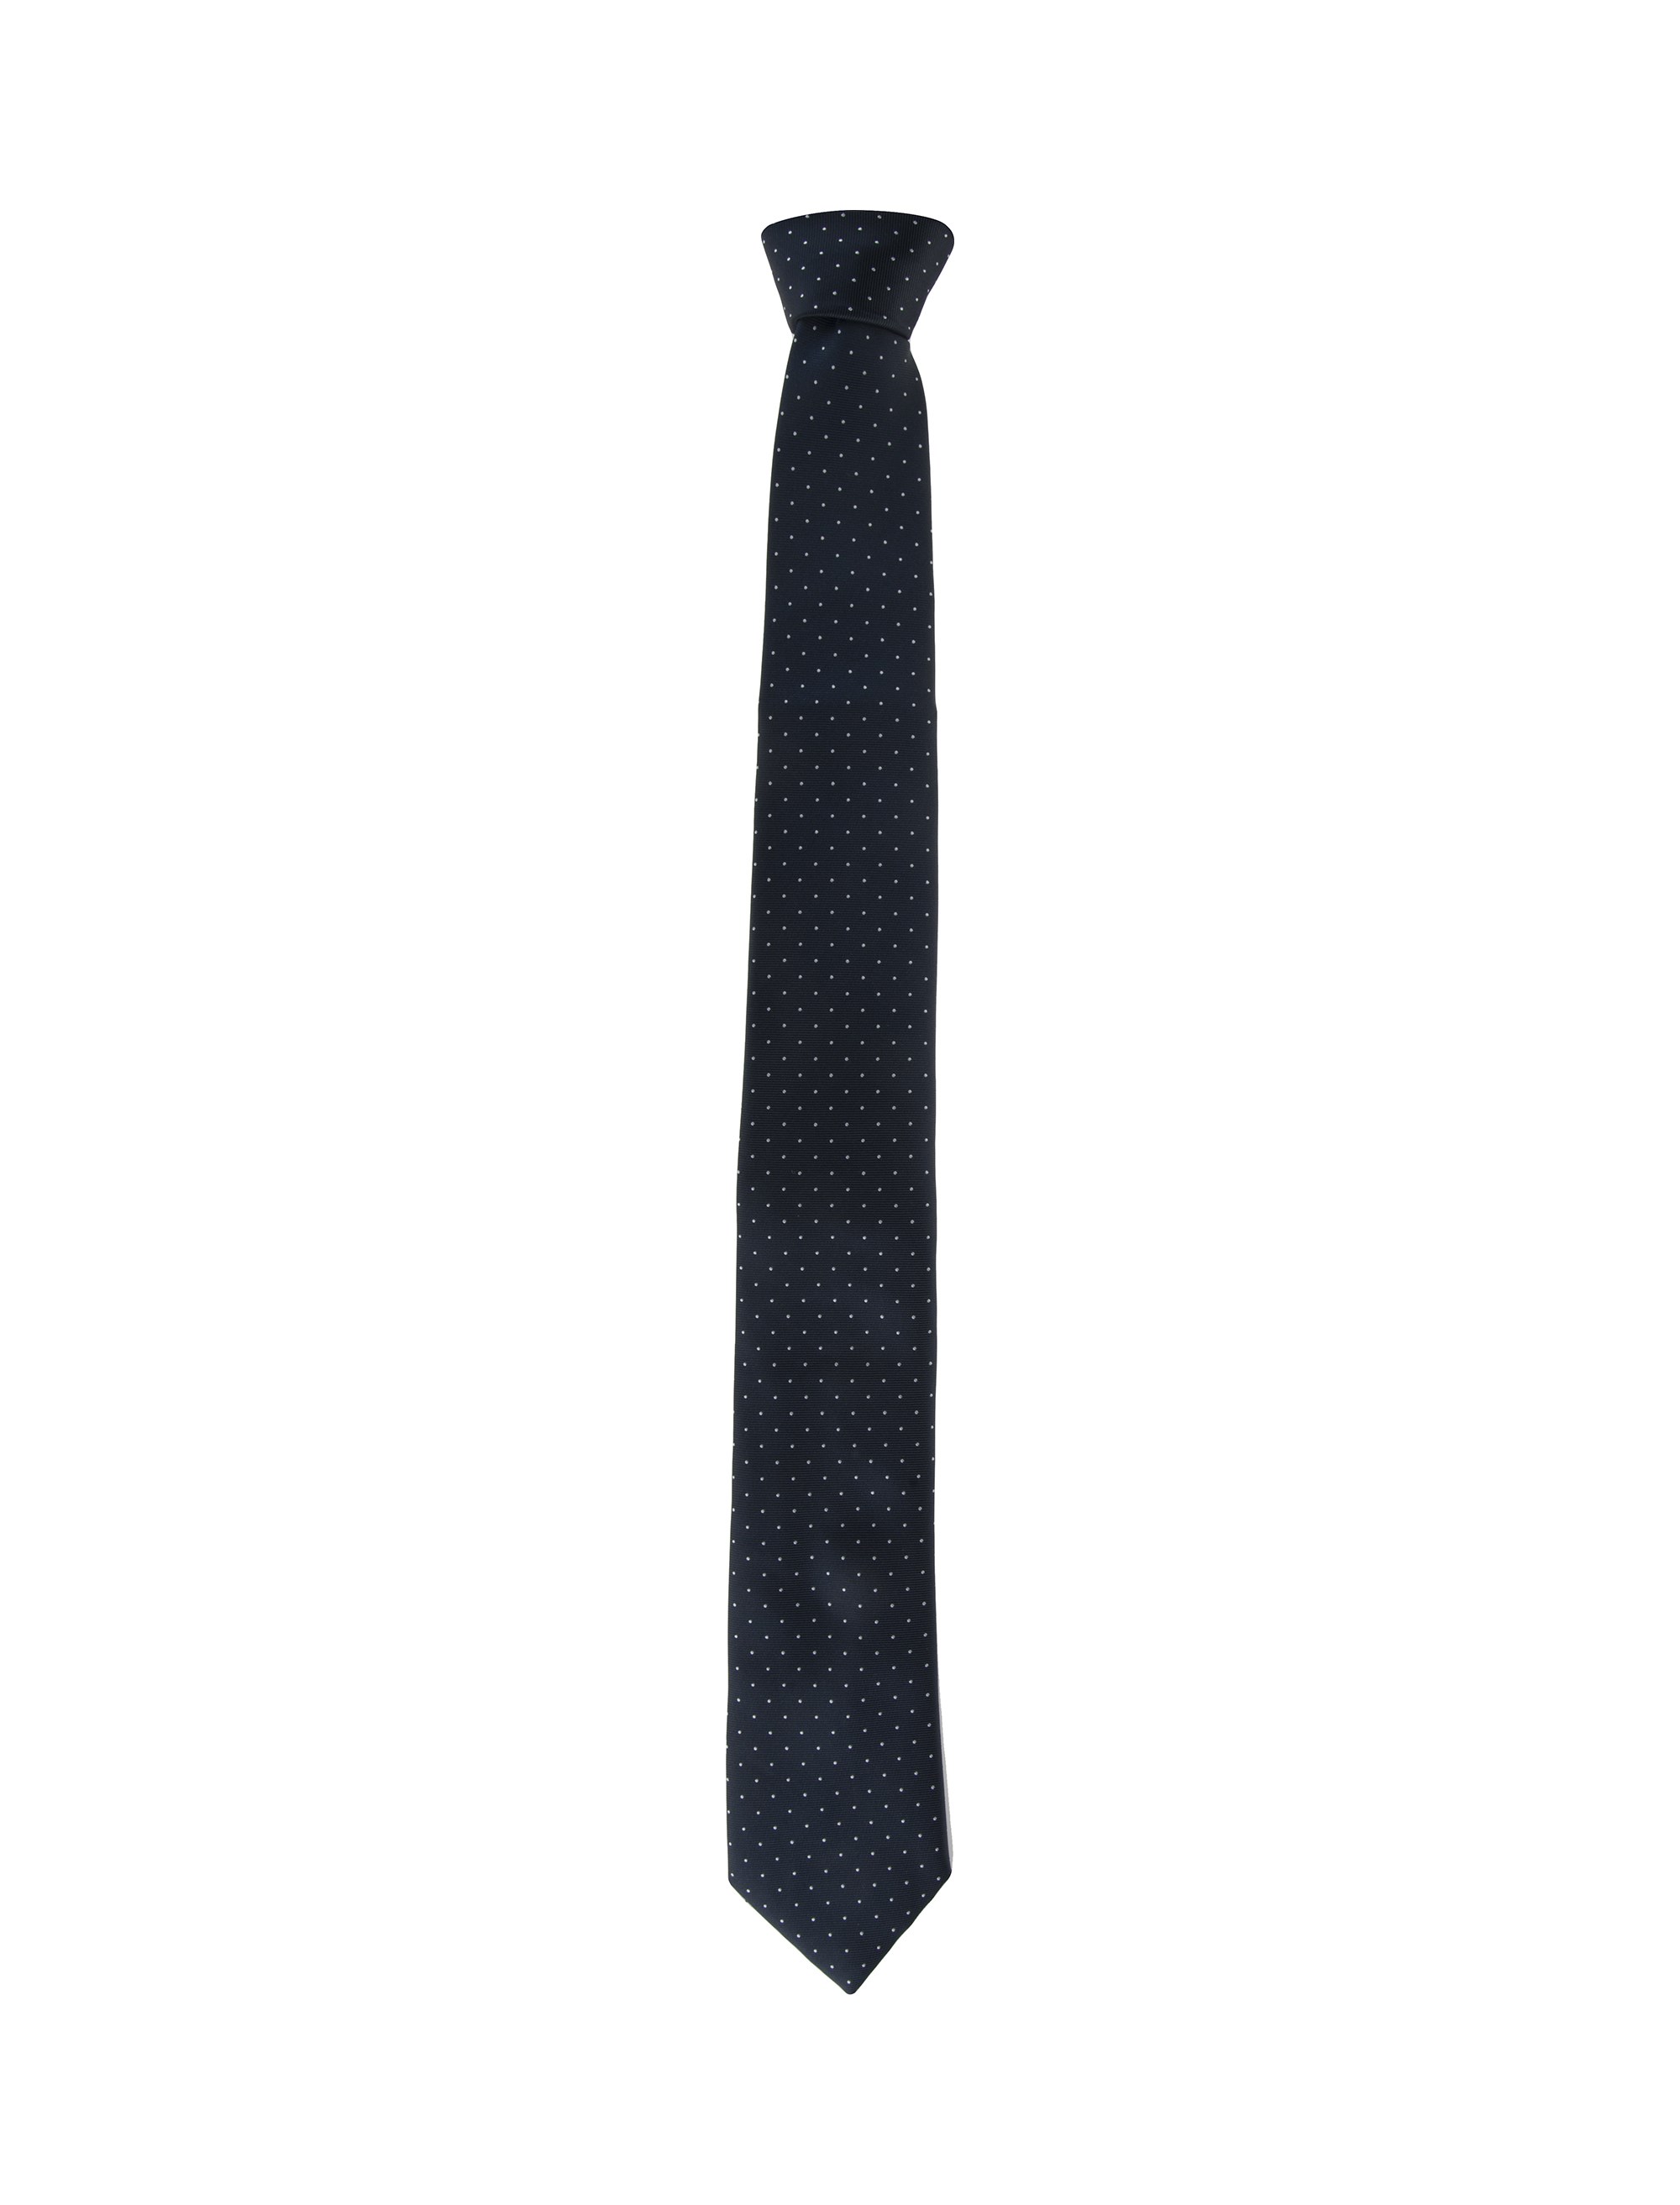 کراوات طرح دار مردانه - یوپیم تک سایز